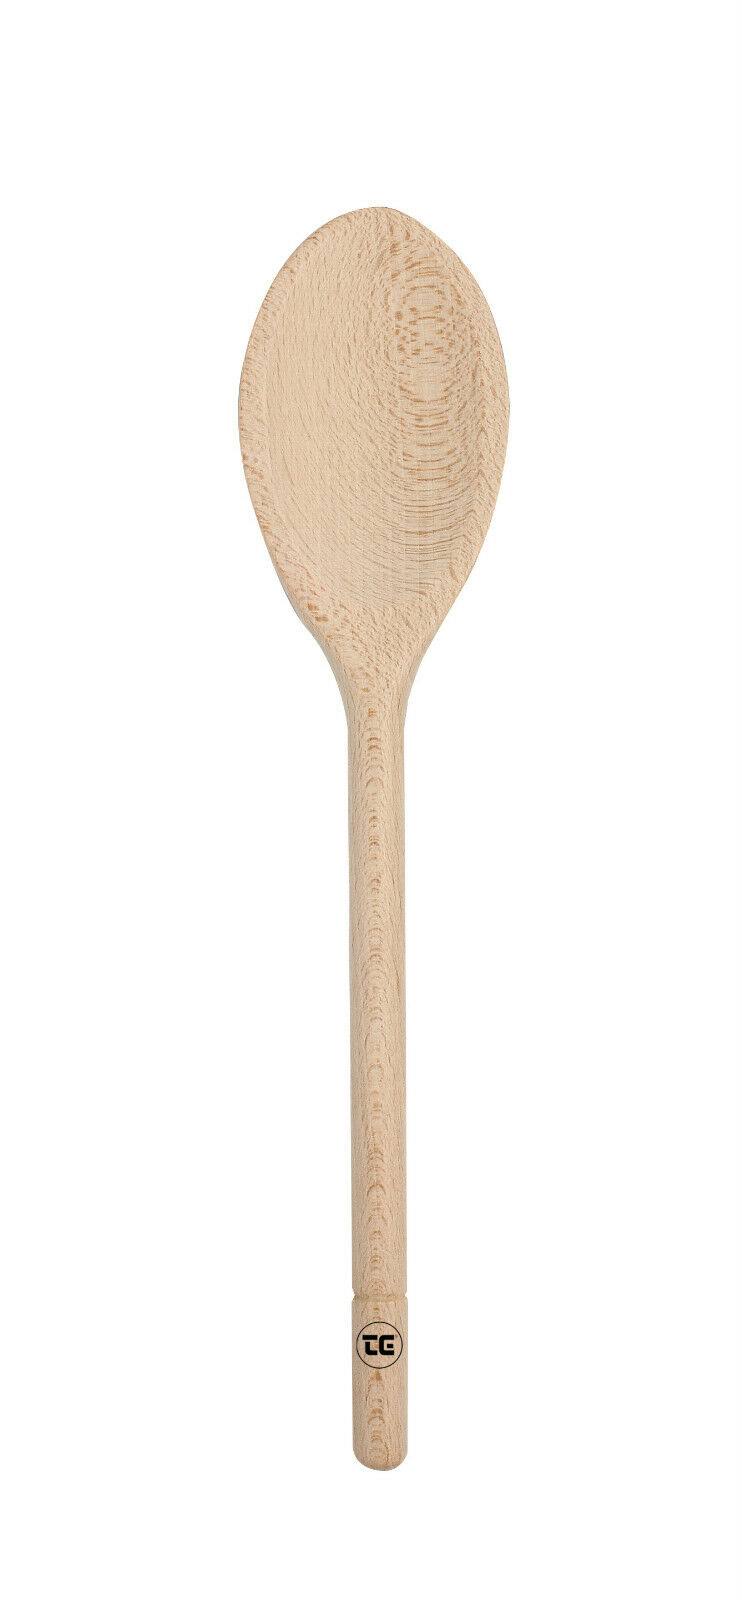 T&G Woodware FSC Beech Wooden Spoon